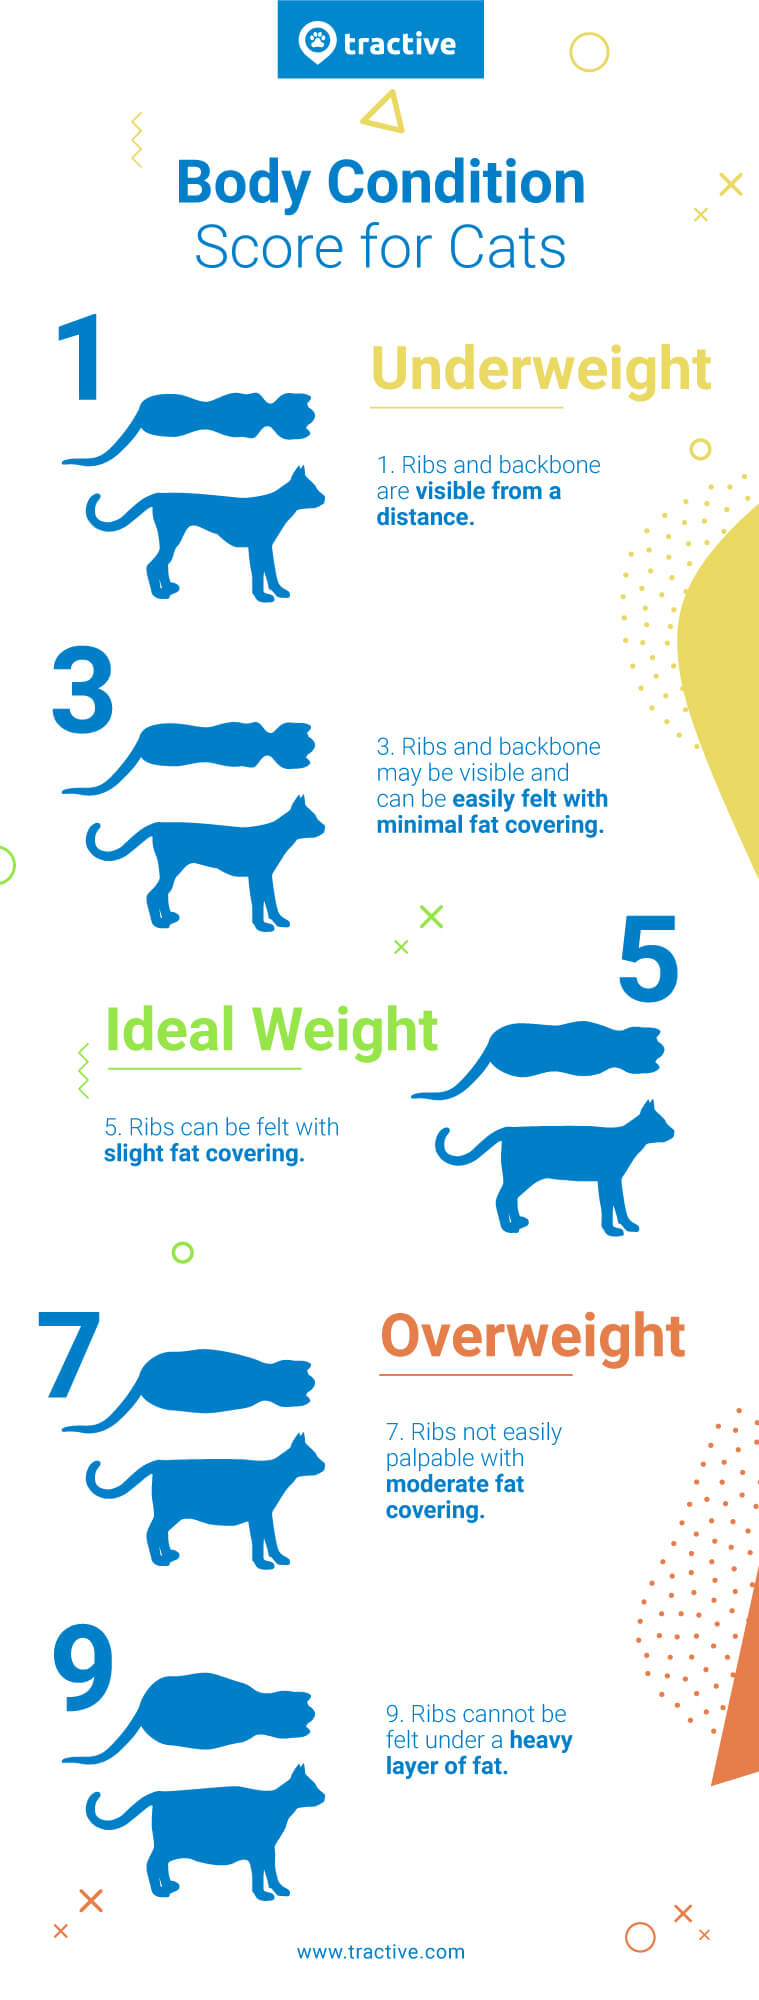 由 Traactive 说明的猫身体状况评分图表 - 体重过轻、理想的猫体重、超重